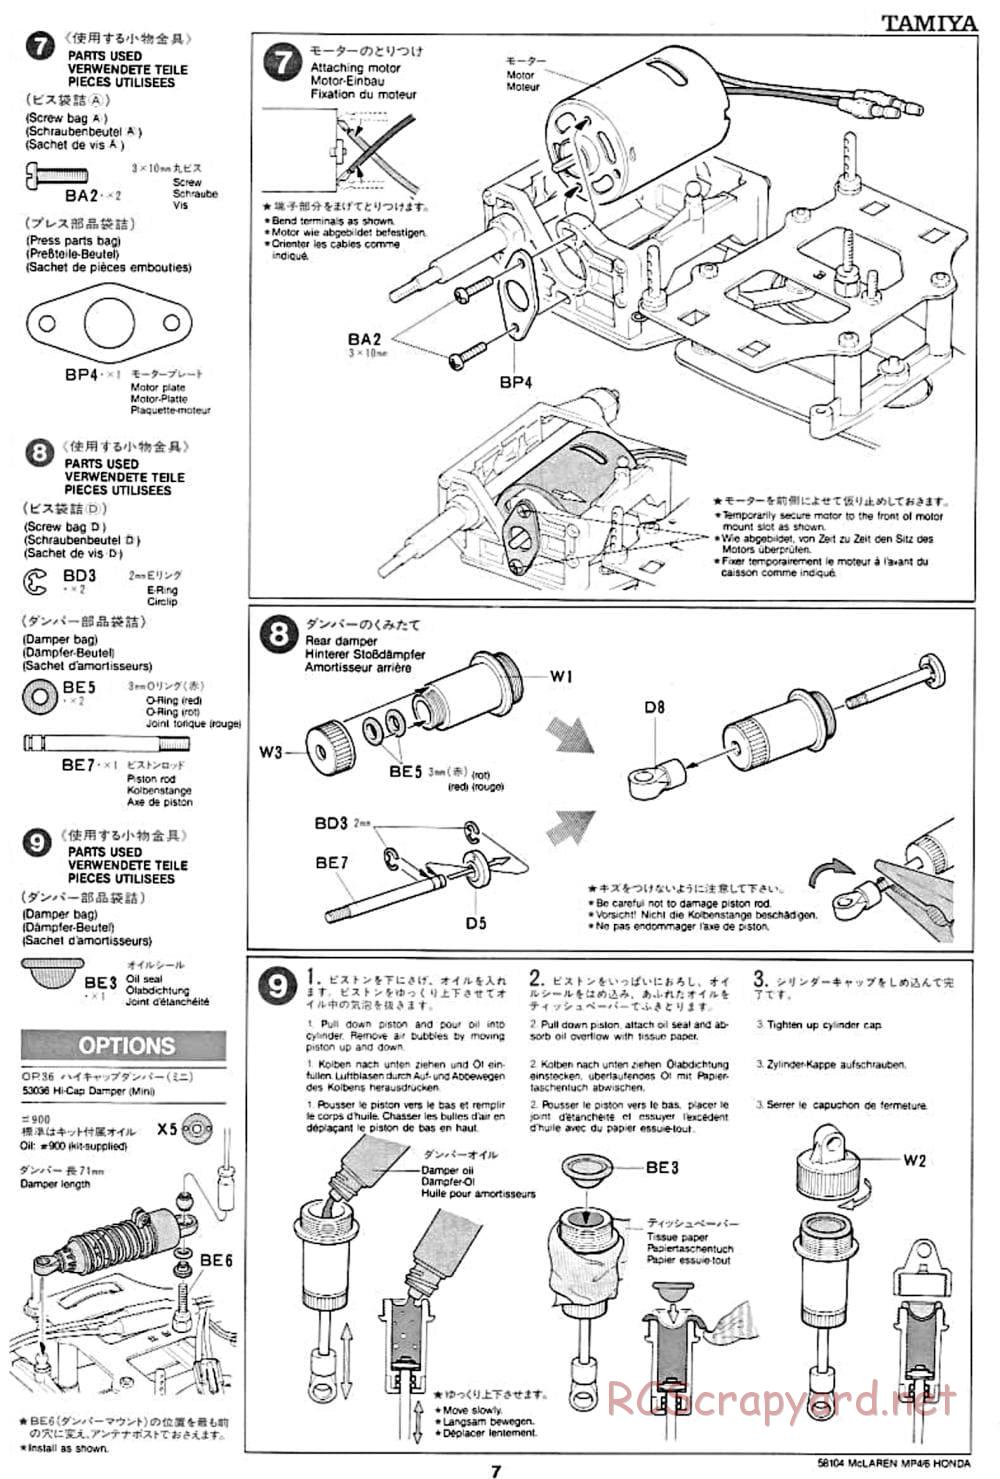 Tamiya - McLaren MP4/6 Honda - F102 Chassis - Manual - Page 7